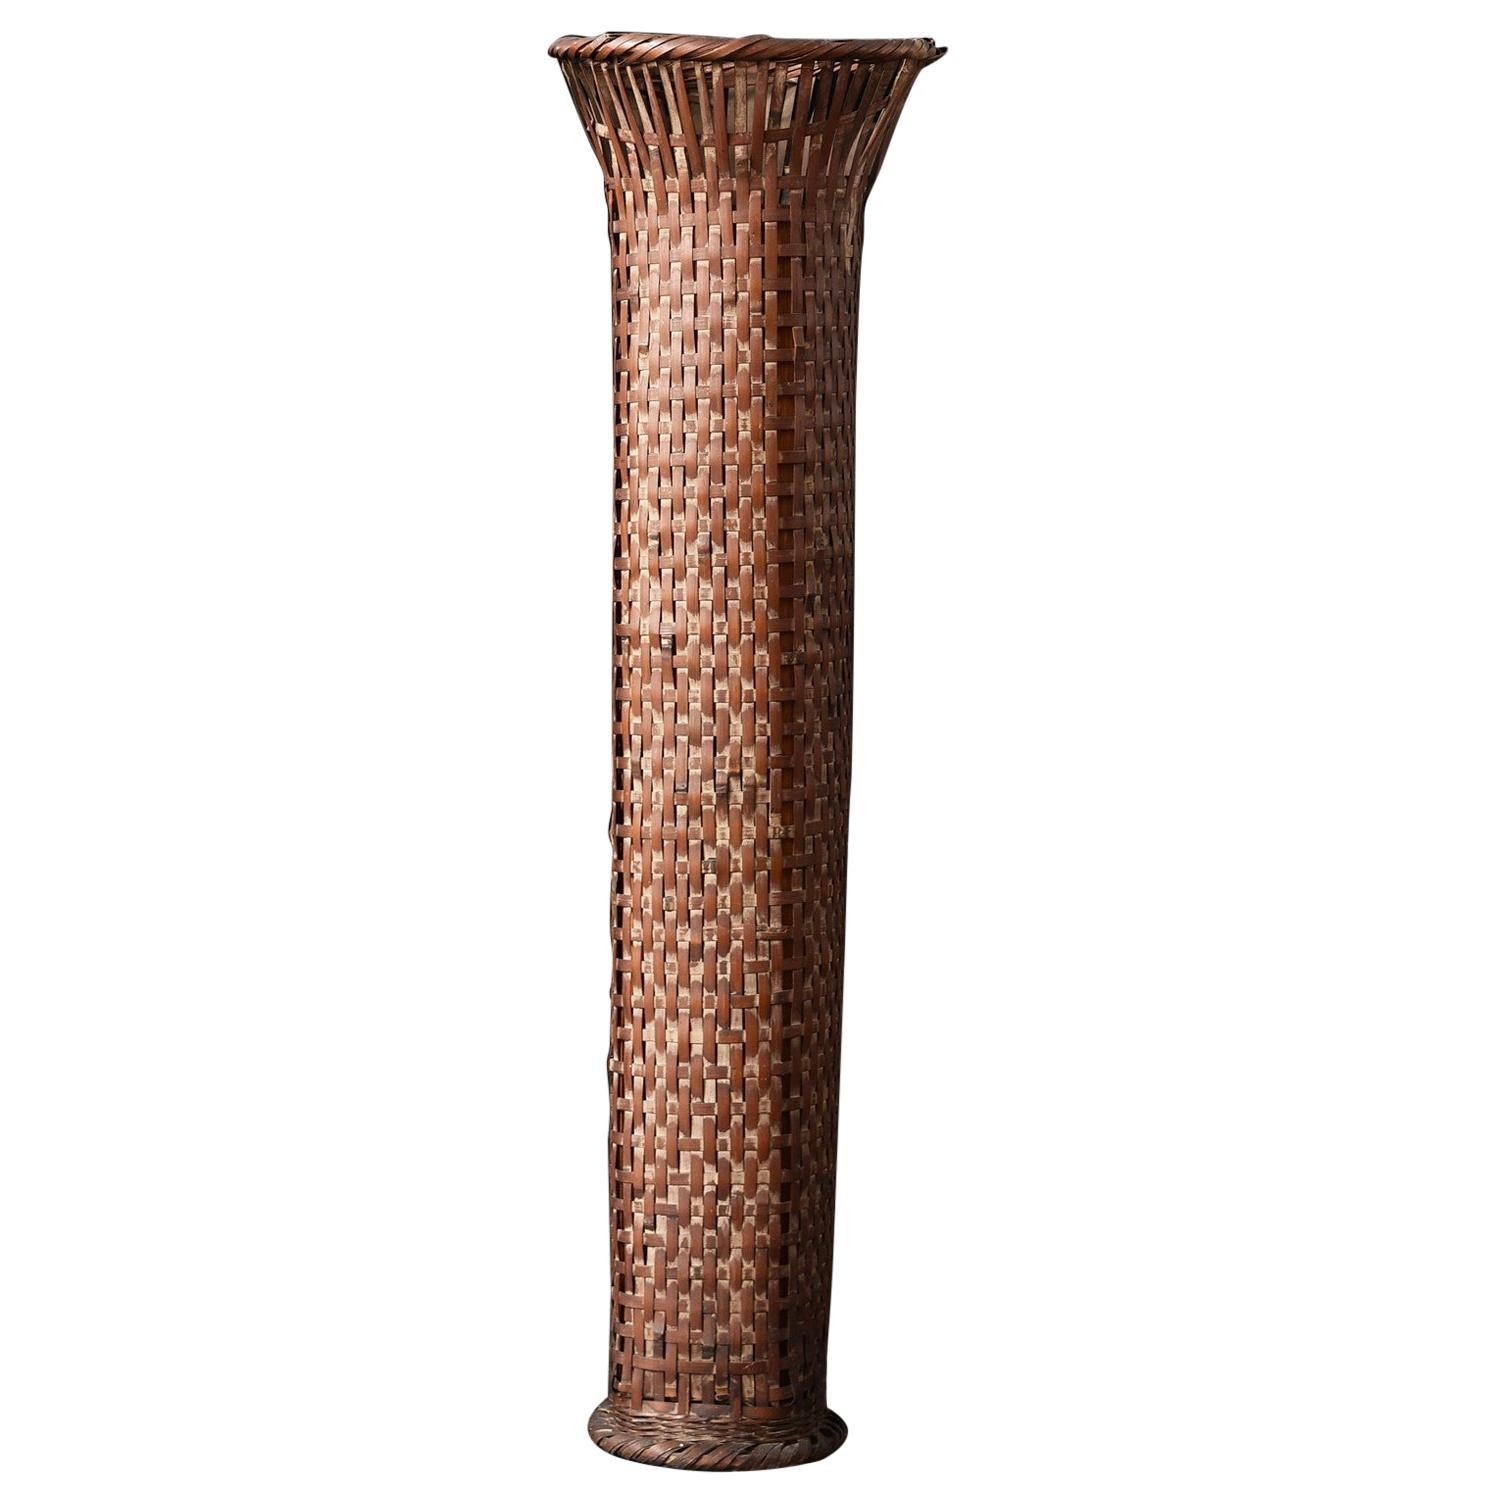 Old Japanese Bamboo Vase Tube / Antique Vase / 20th Century/Wabi-Sabi Art